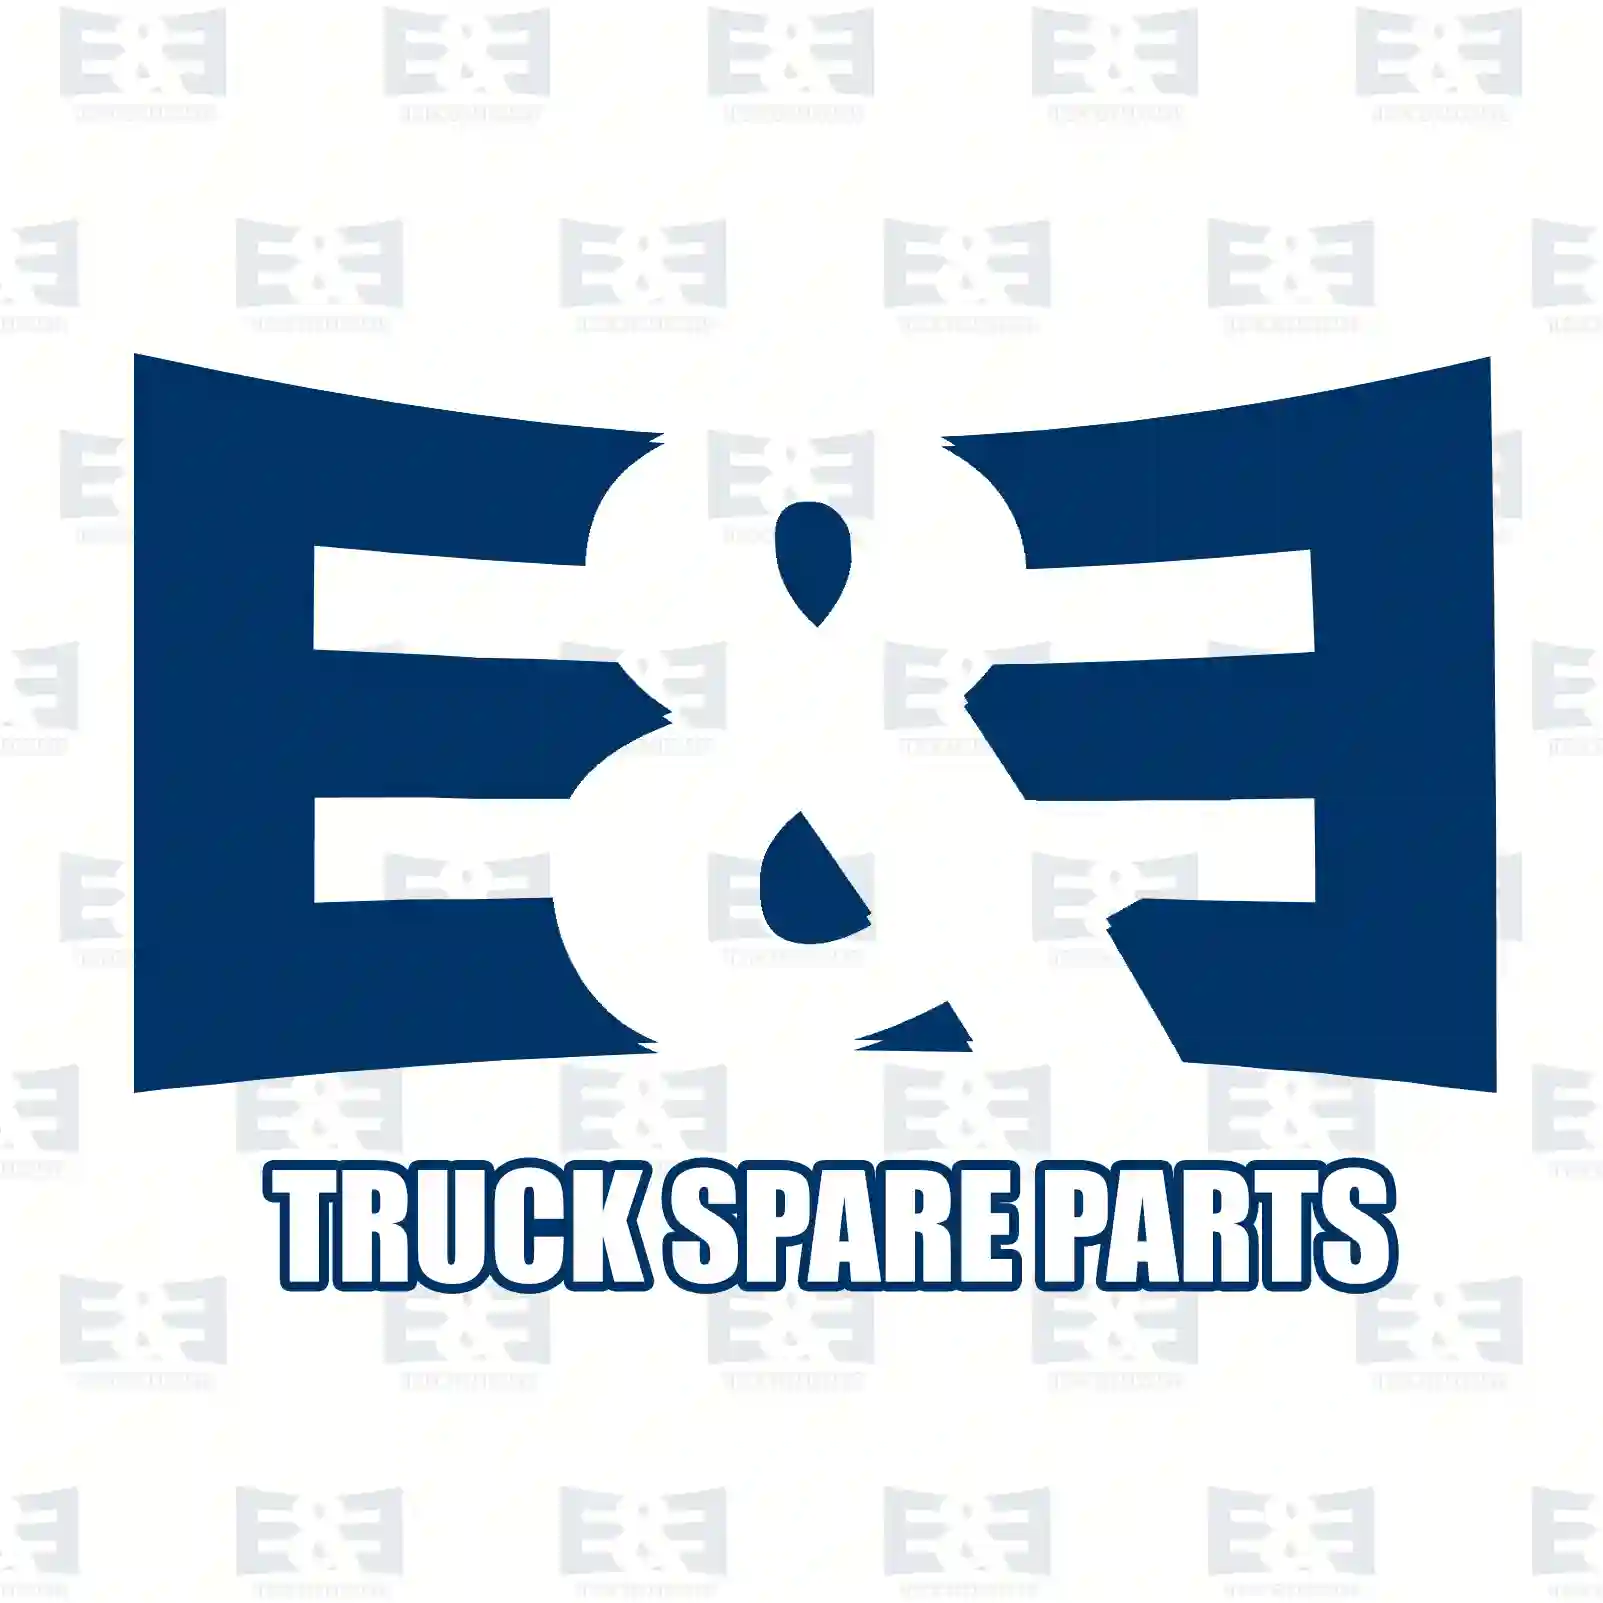 Control wire, parking brake, rear, 2E2296299, 9111490, 93193021, 36400-00Q0C, 36400-00QAB, 82000-21940, 82006-94128, 4403490, 4418464, 3640000Q0C, 3640000QAB, 8200021940, 8200694128 ||  2E2296299 E&E Truck Spare Parts | Truck Spare Parts, Auotomotive Spare Parts Control wire, parking brake, rear, 2E2296299, 9111490, 93193021, 36400-00Q0C, 36400-00QAB, 82000-21940, 82006-94128, 4403490, 4418464, 3640000Q0C, 3640000QAB, 8200021940, 8200694128 ||  2E2296299 E&E Truck Spare Parts | Truck Spare Parts, Auotomotive Spare Parts